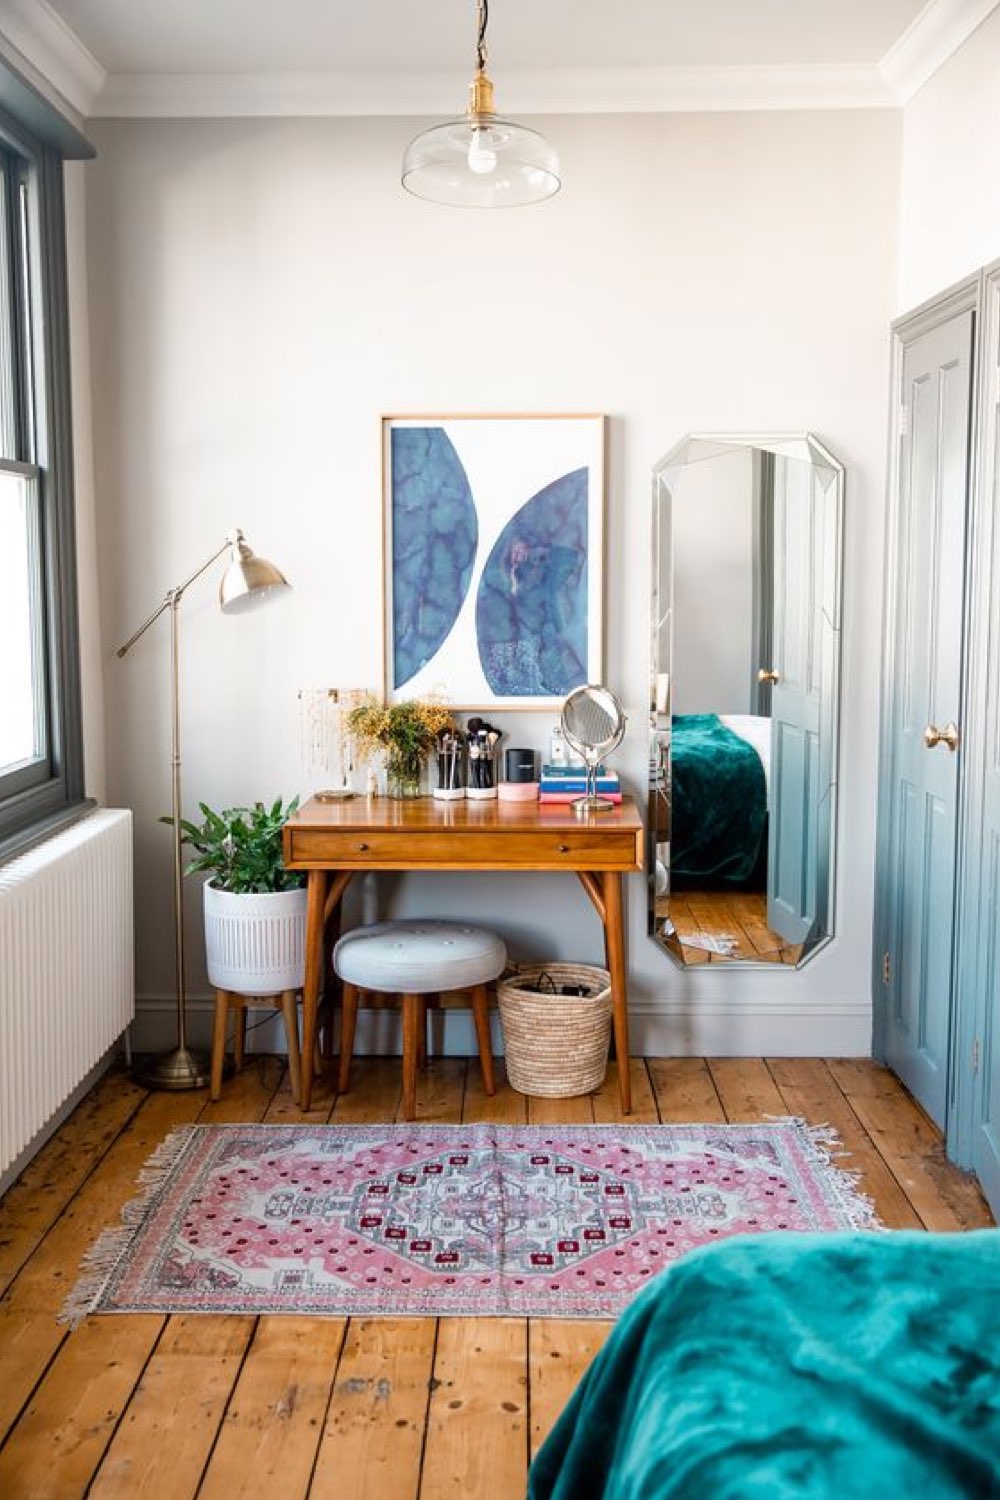 exemple chambre style vintage moderne renfoncement tableau forme organique bleu au dessus coiffeuse bureau années 50 miroir arrondis